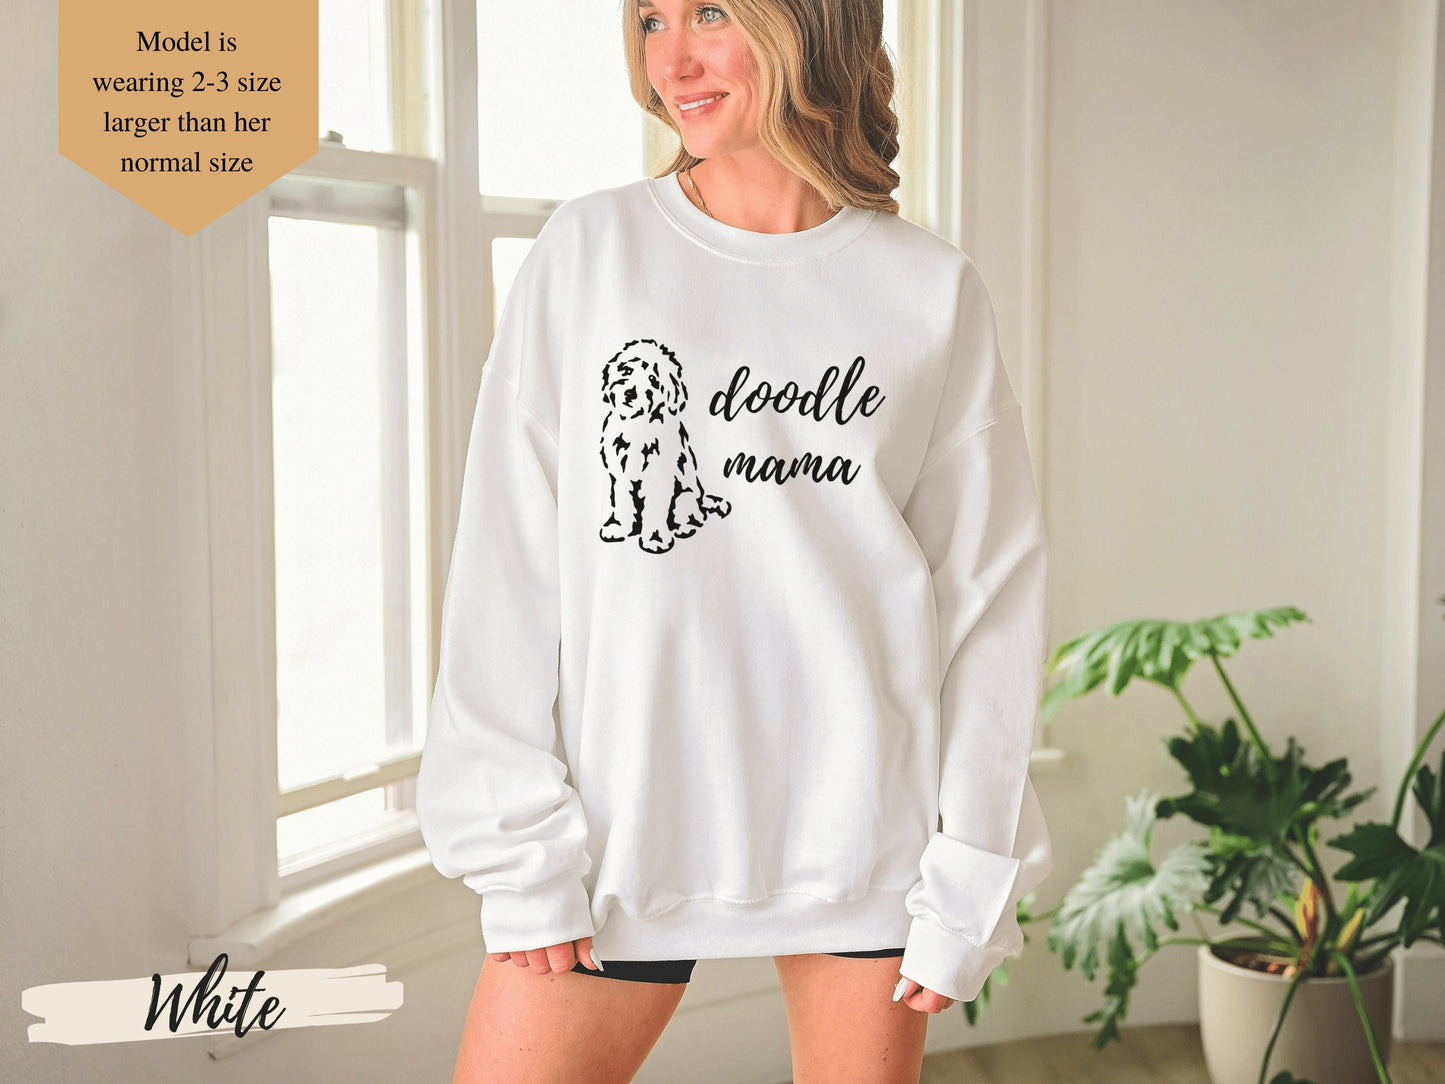 Doodle Mama Sweatshirt, Funny Sweatshirt, Graphic Sweatshirt, Gift for Her, Goldendoodle, Labradoodle, Dog Mom, Doodle Sweatshirt